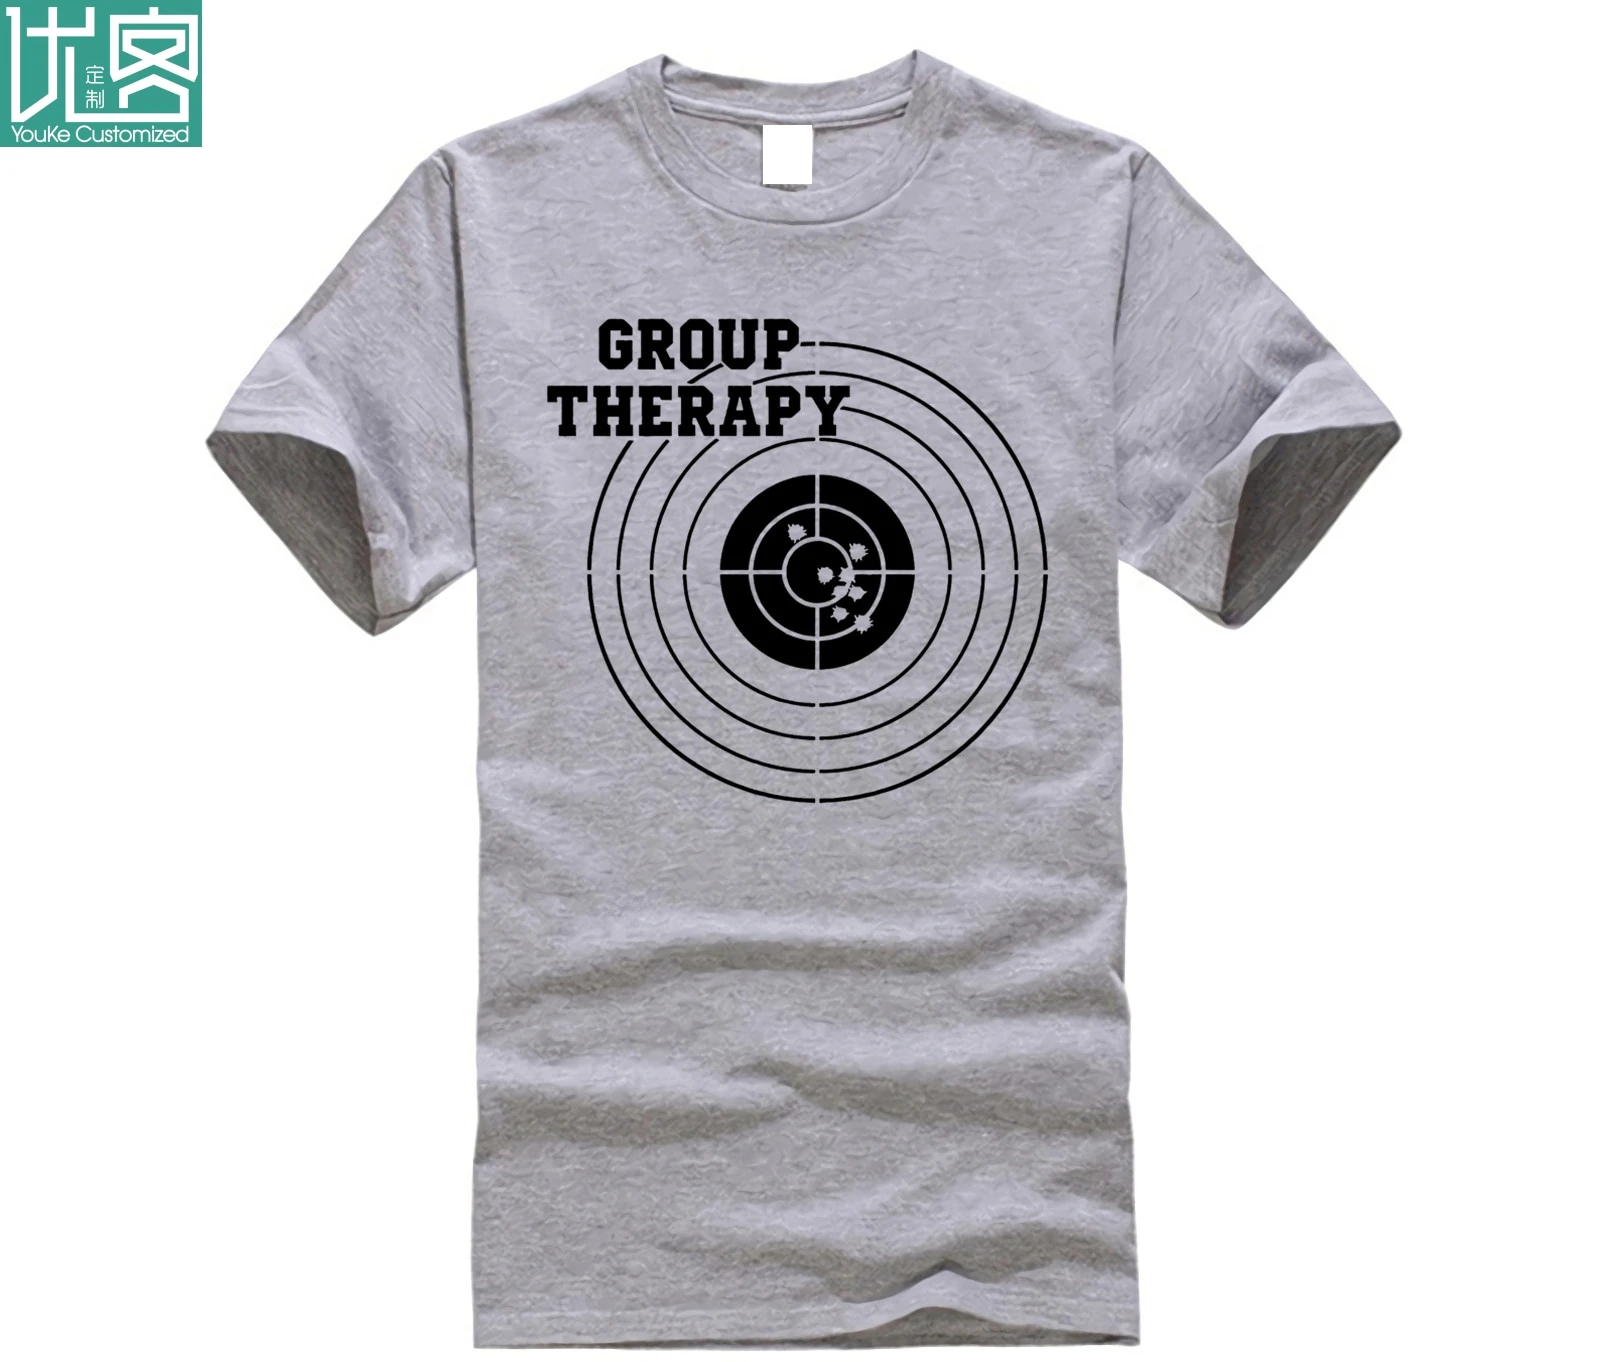 2019 брендовая футболка Homme, футболка с принтом, Мужская Футболка Harajuku Group Therapy, Мужская футболка, футболка с пистолетом для стрельбы